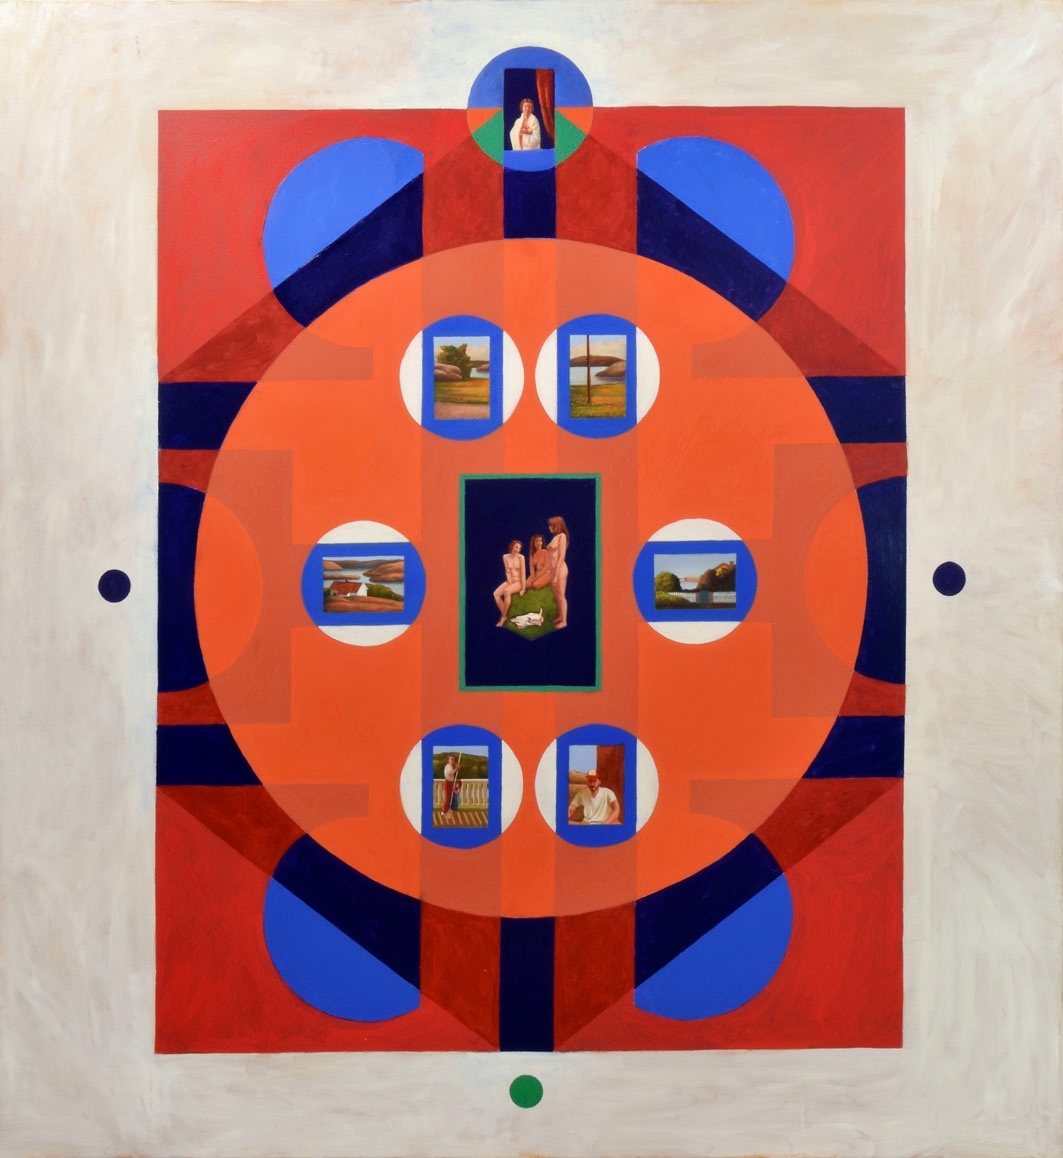 I strängt geometrisk form bjuder Lars Anderssons verk bildvärldar som, i lager på lager, för in till landskap och människor – eller ut i kosmos oändlighet. Stora, inramande fält är ofta enfärgade, här i orange, rött och vitt. I centrum finns motiv som öppnar bilder i bilden. Likt kameraobjektivets lins zoomar detta verk bland annat in nakna kvinnor, gungande barn och skärgårdslandskap.